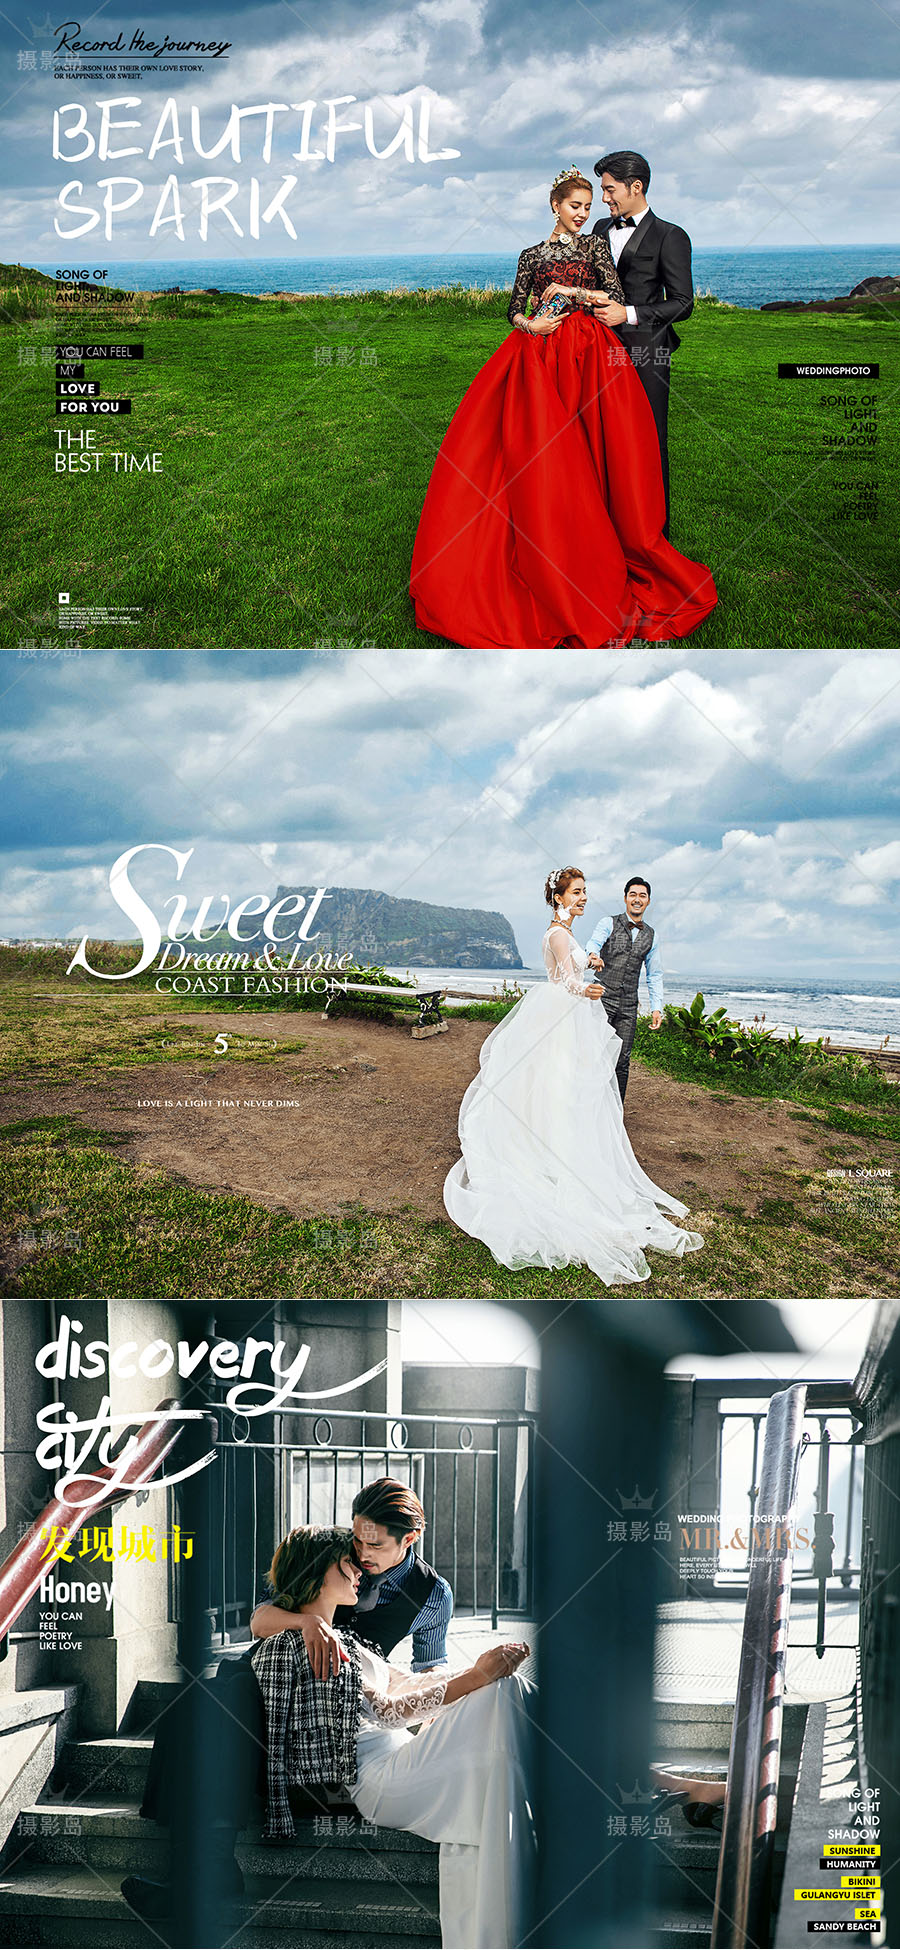 婚纱照旅拍、街拍、个人写真大片、时尚杂志封面相册字体文字素材PSD模版